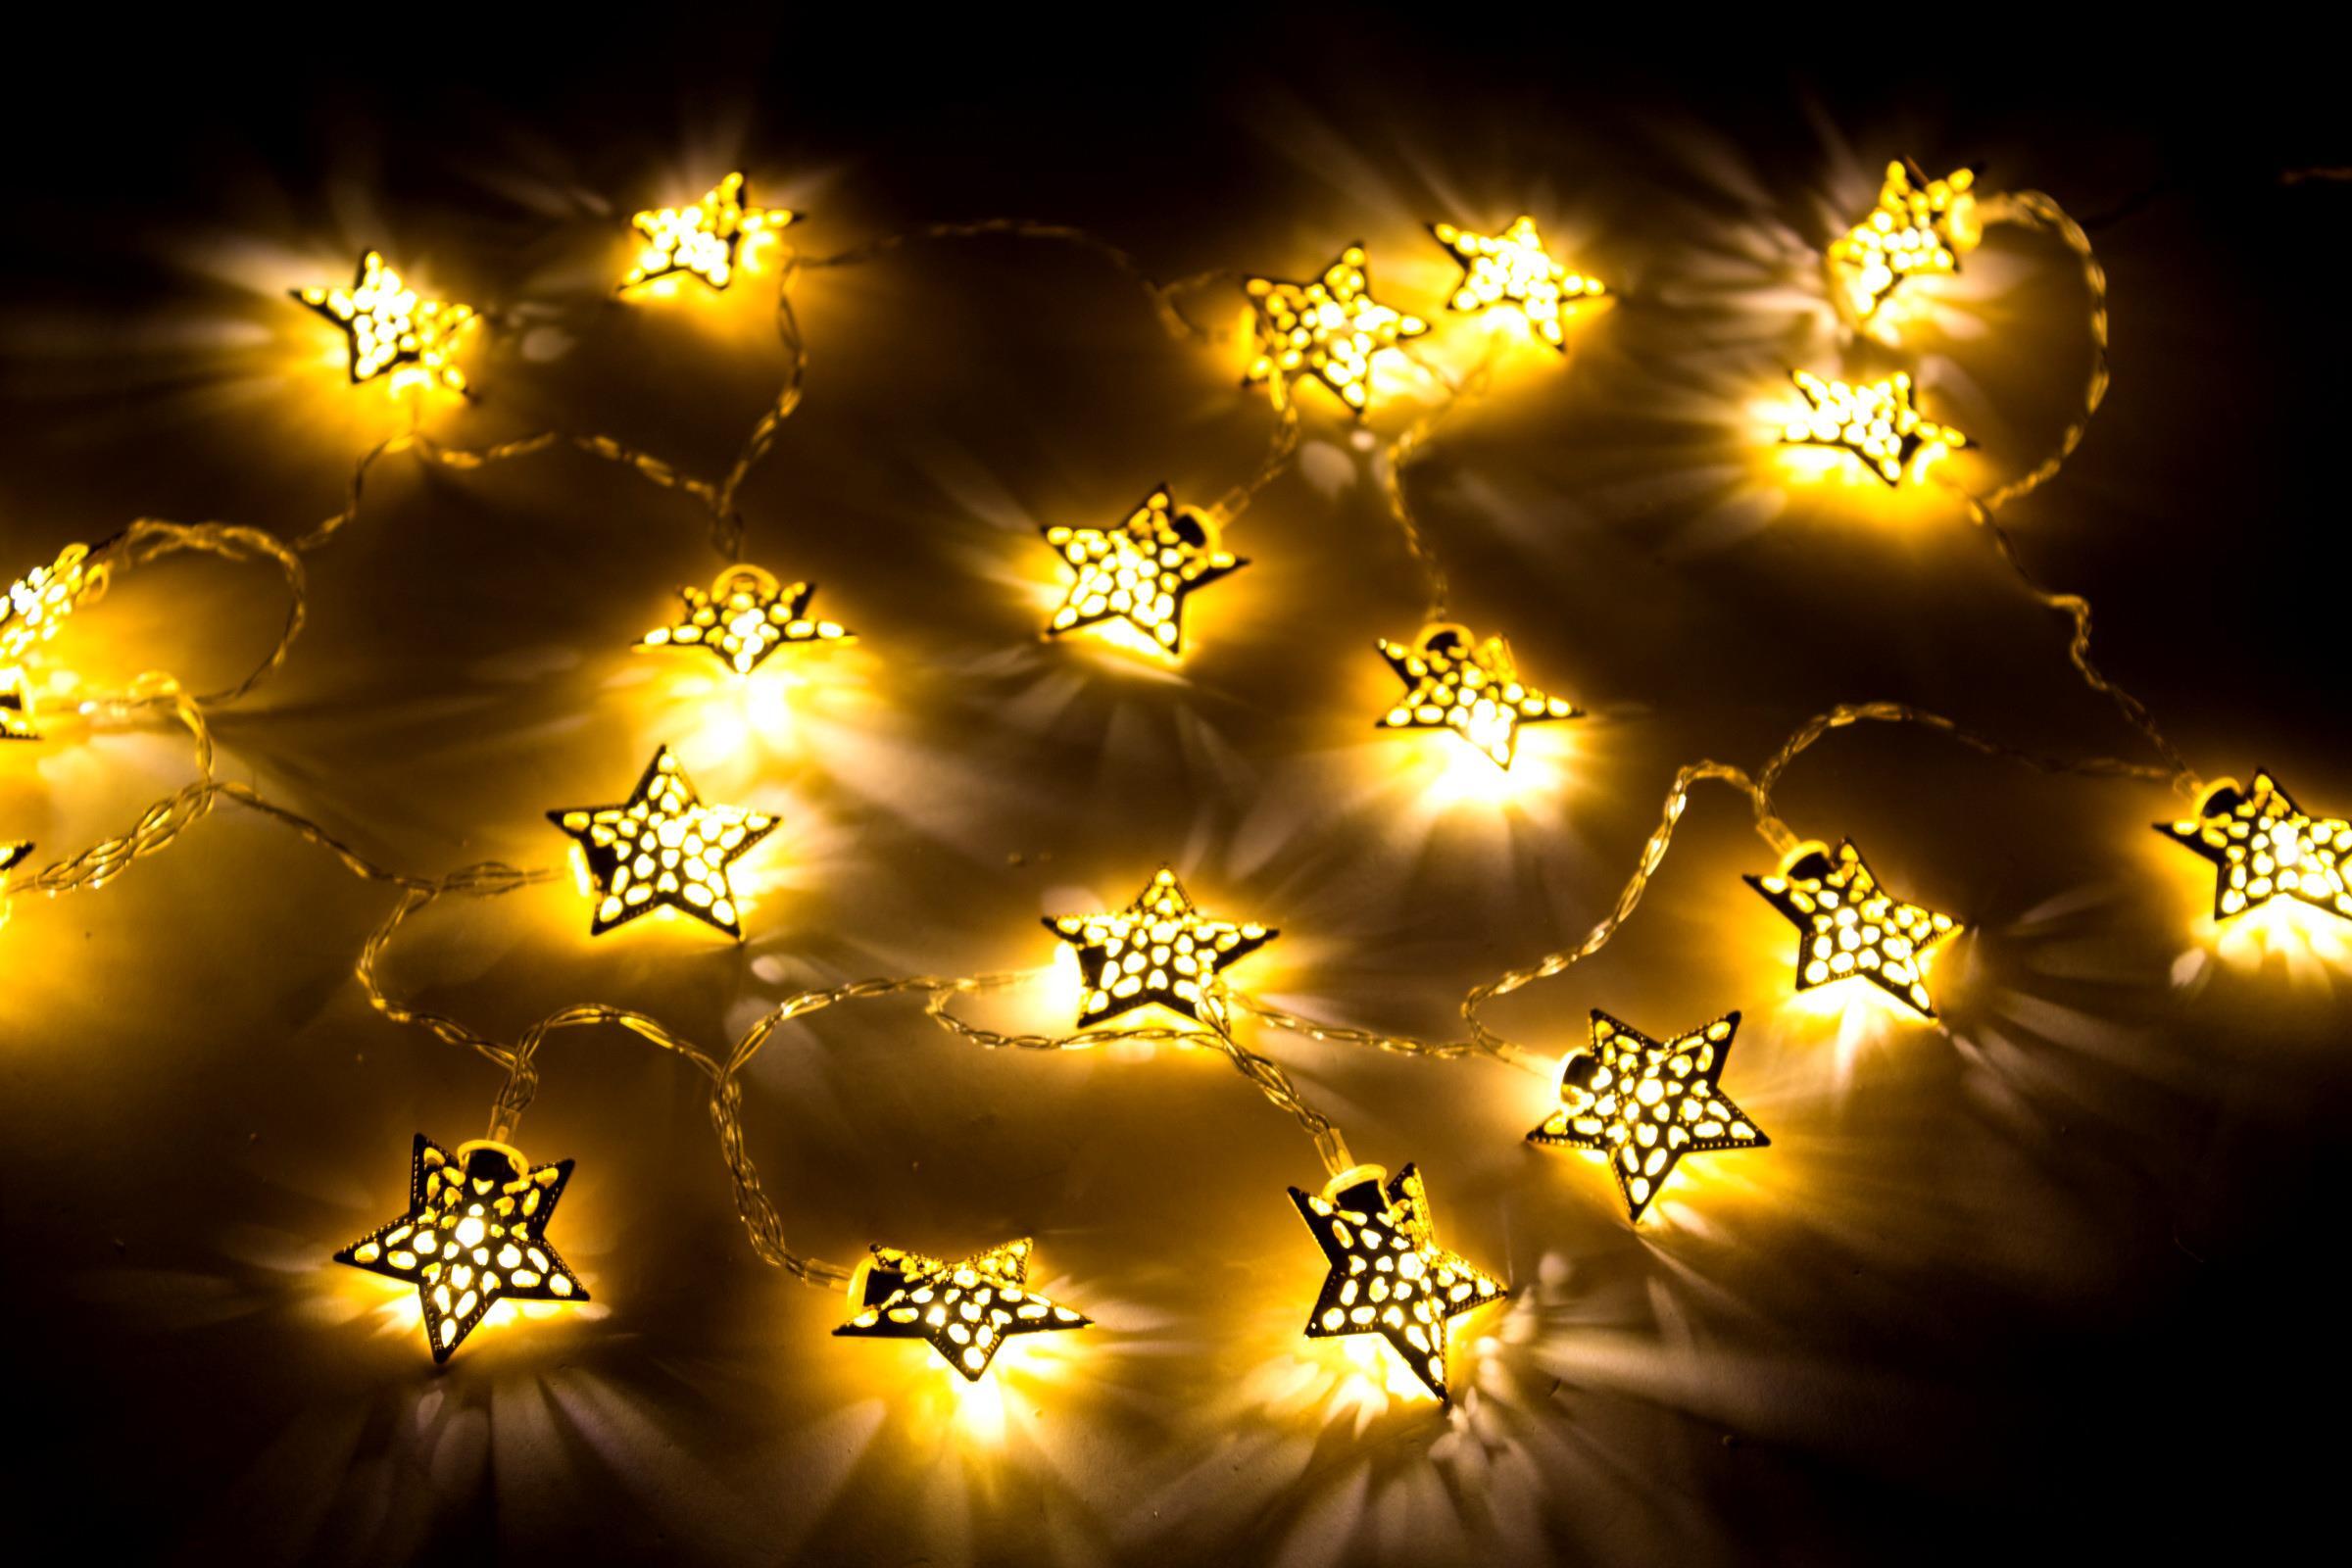 LED Metall Lichterkette Sterne 20 LED gold